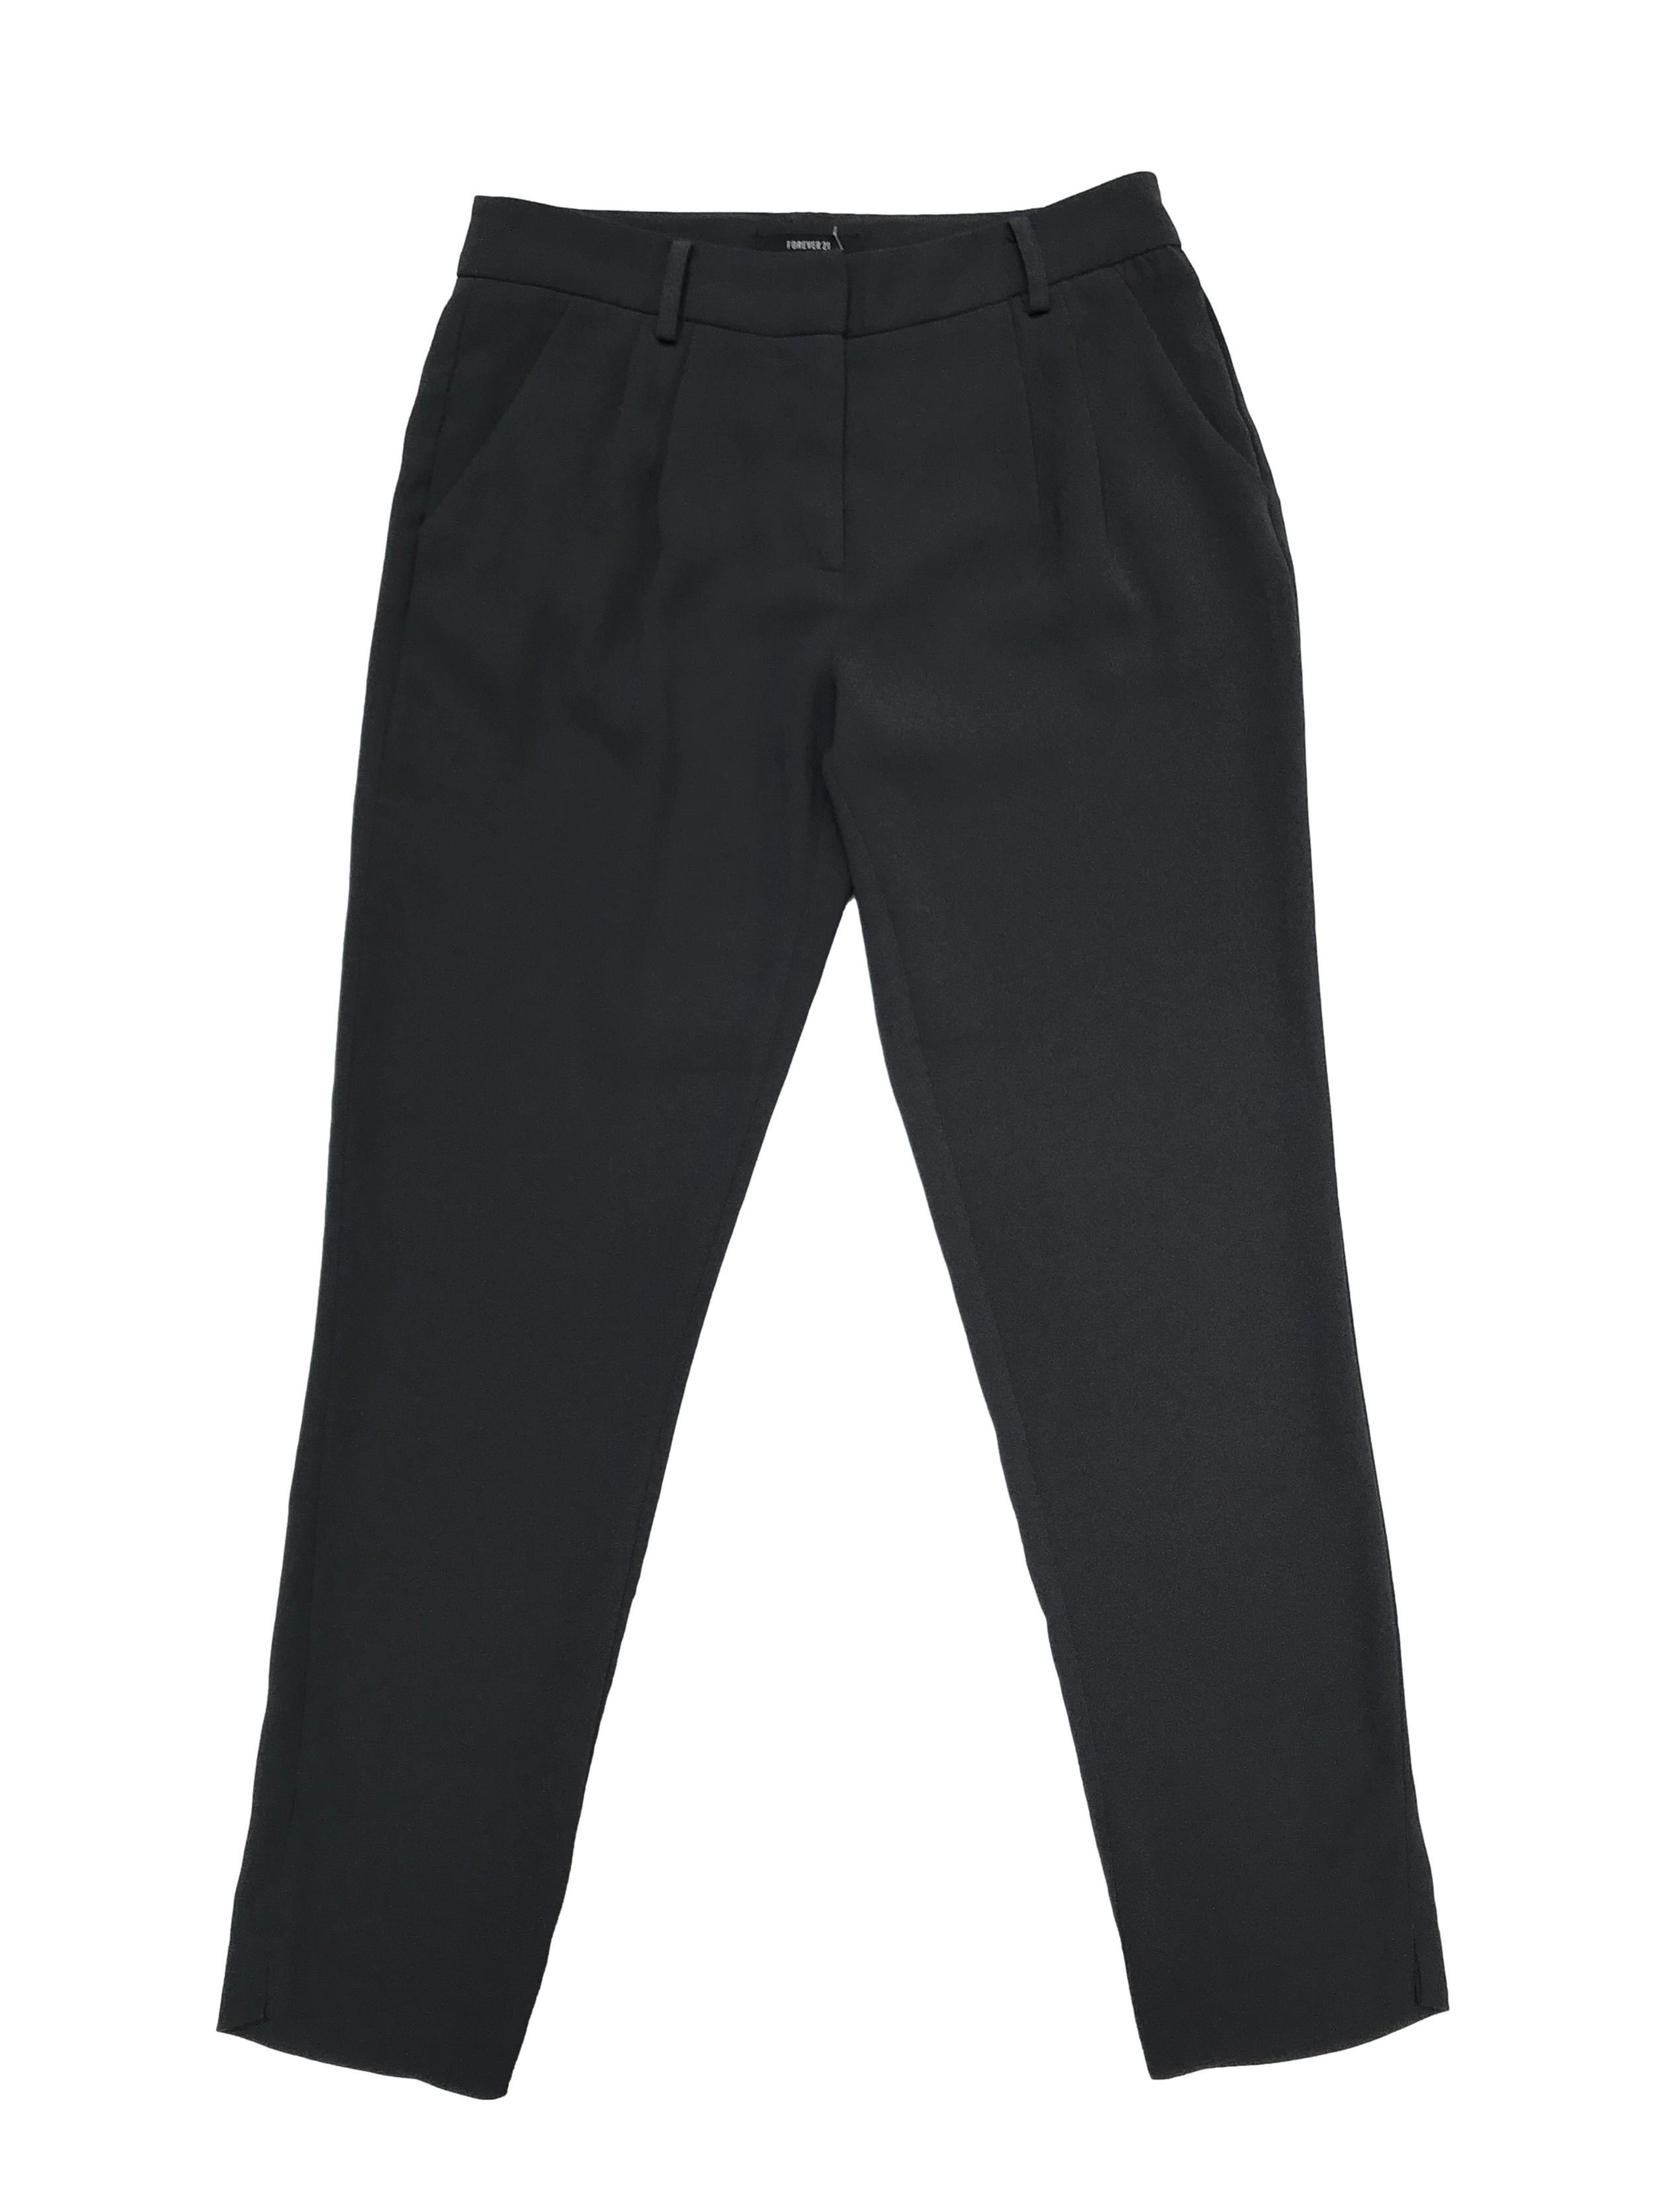 Pantalón Forever21 estilo formal, tela tipo crepé grueso gris, tiro medio con pliegues y bolsillos delanteros. Cintura 72cm. Largo 90cm.